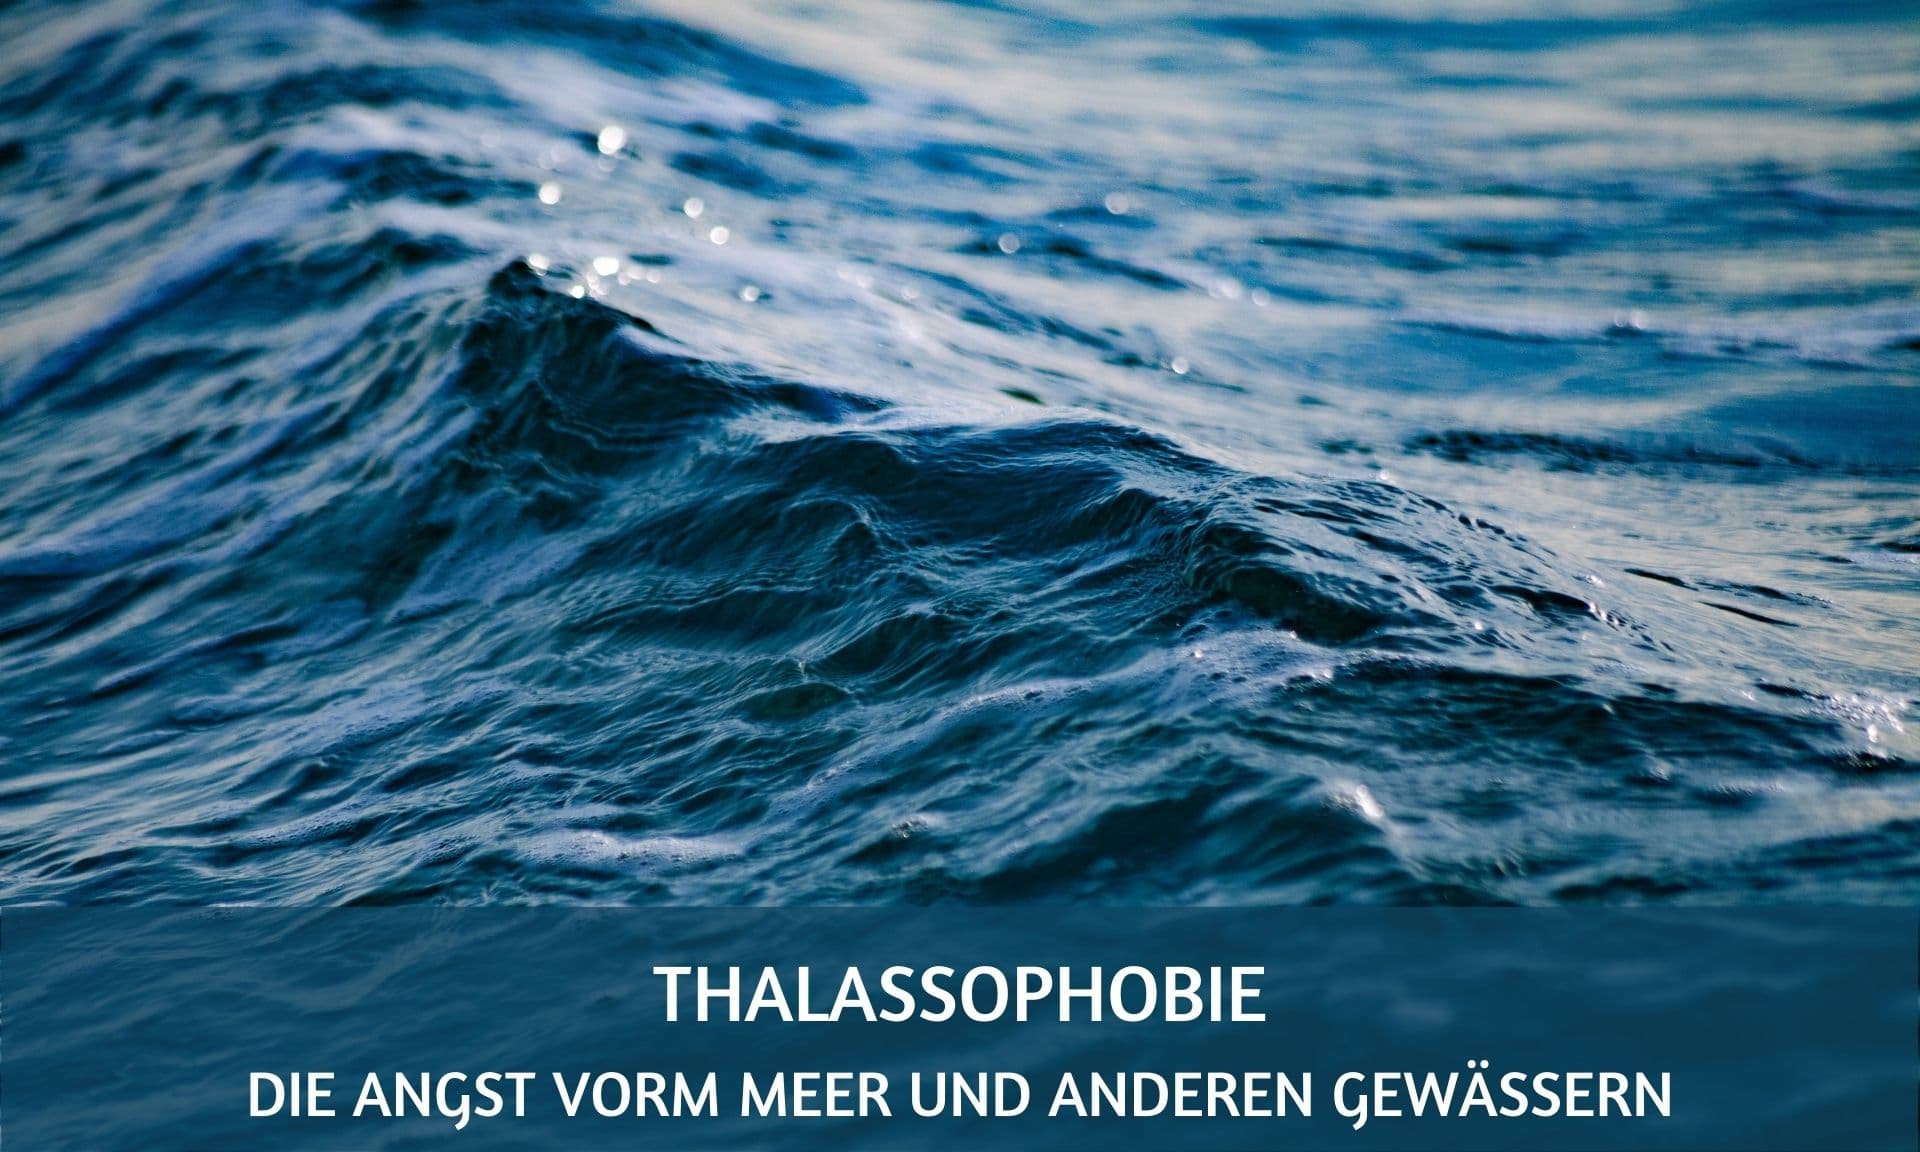 Thalassophobie Angst vor dem Meer